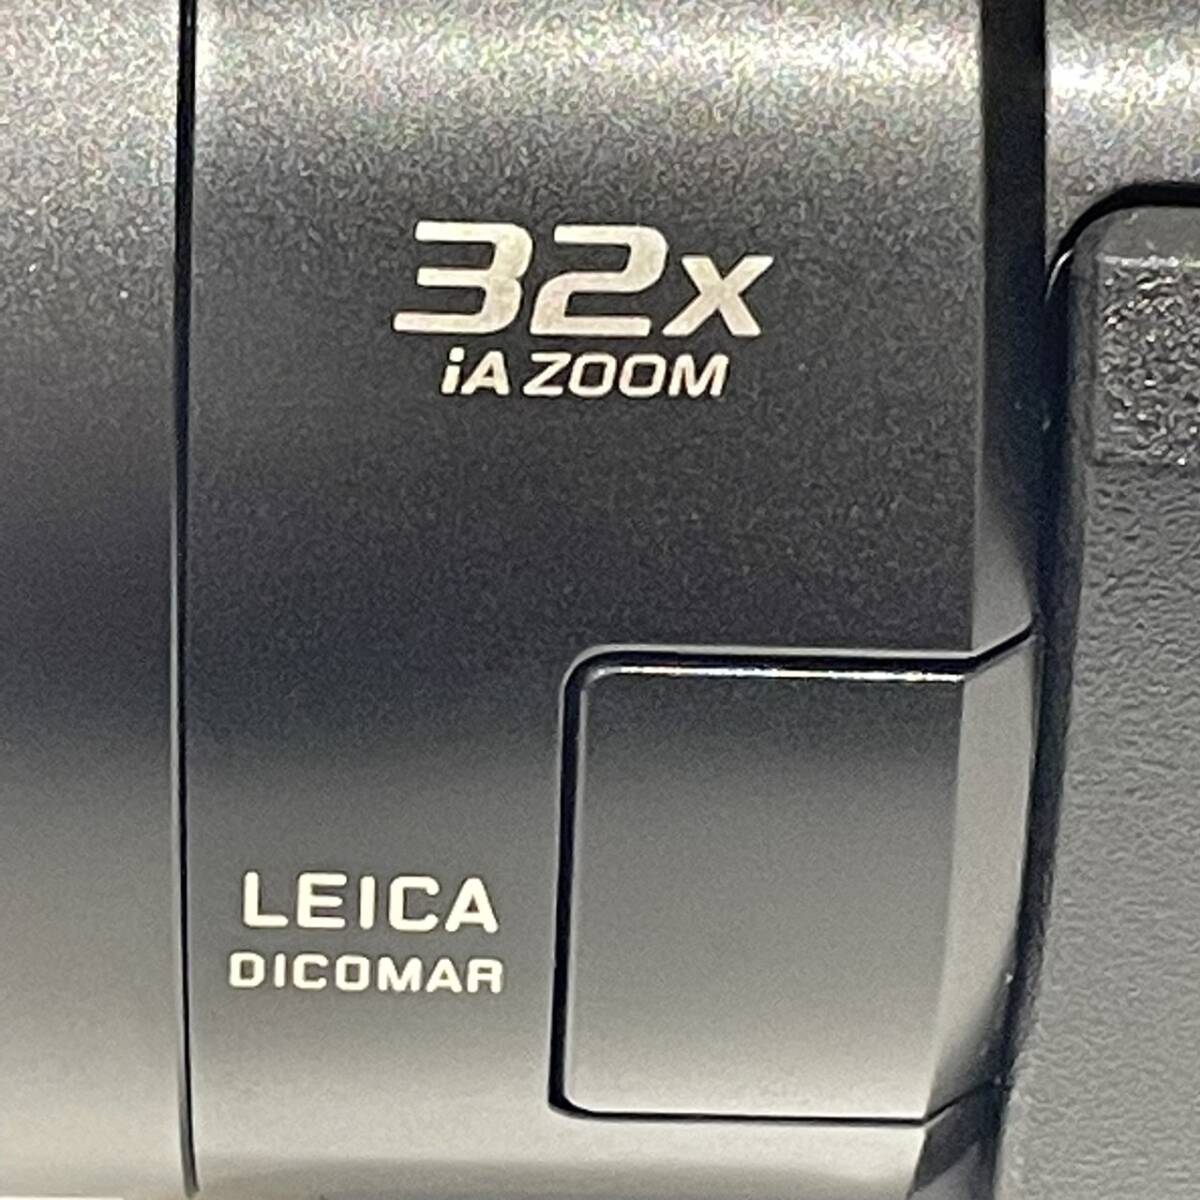 【AMT-10152】Panasonic パナソニック デジタル4Kビデオカメラ HC-VX2MS ブラック 5.1CH 64GB 2022年 32x ZOOM バッテリー 動作確認済み_画像6